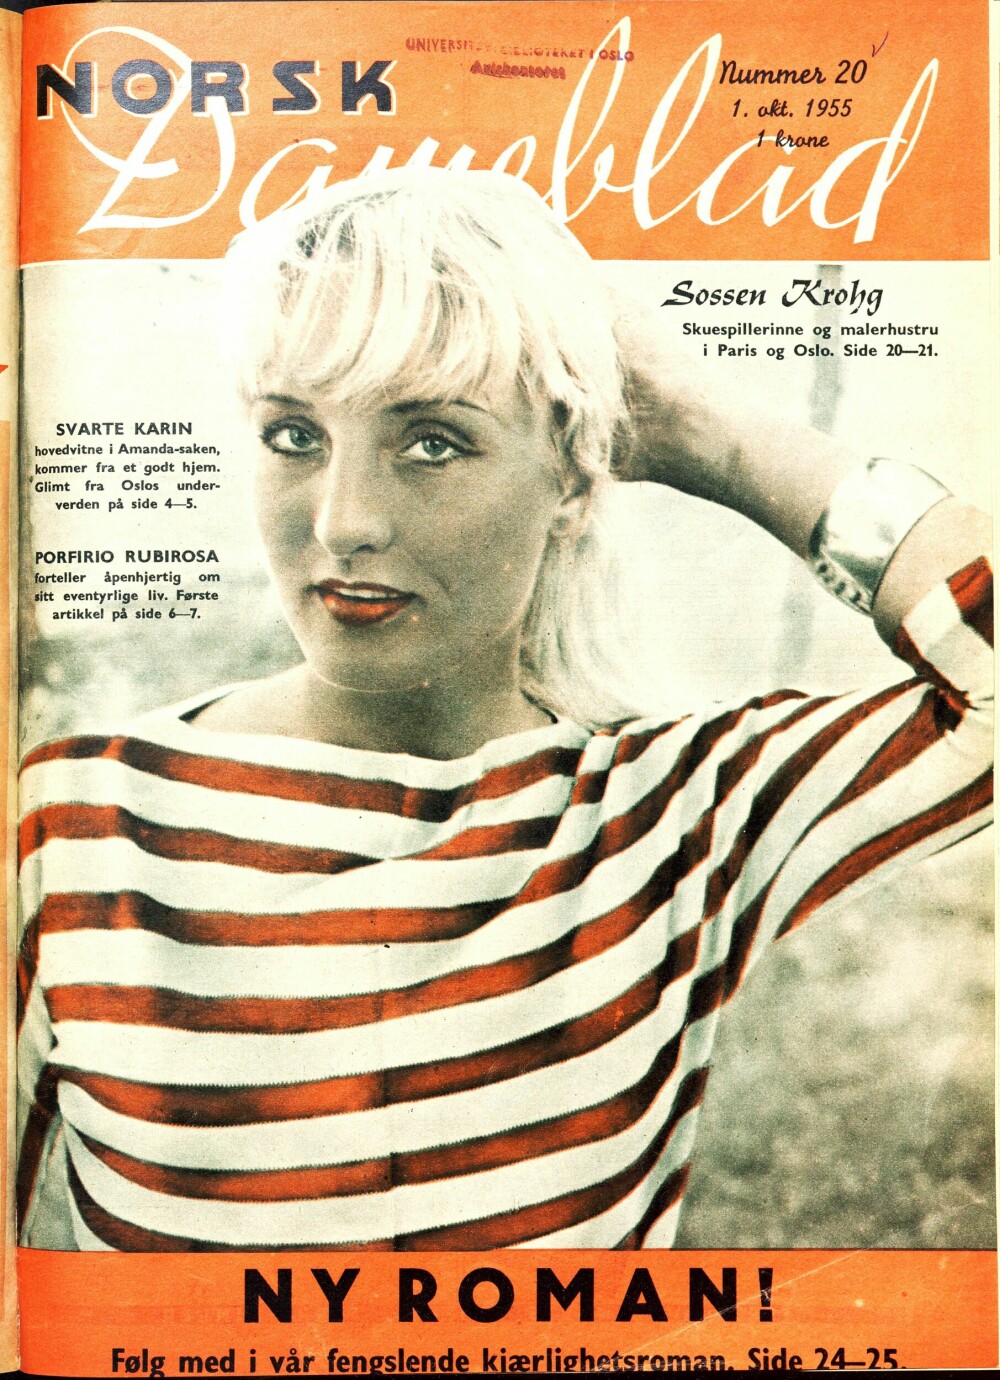 <b>NORSK DAMEBLAD:</b> Blond og sexy, skuespillerinne og malerhustru, Sossen vakte oppsikt og ble snart en snakkis i hele byen etter at hun prydet forsiden på Norsk Dameblad i 1955.